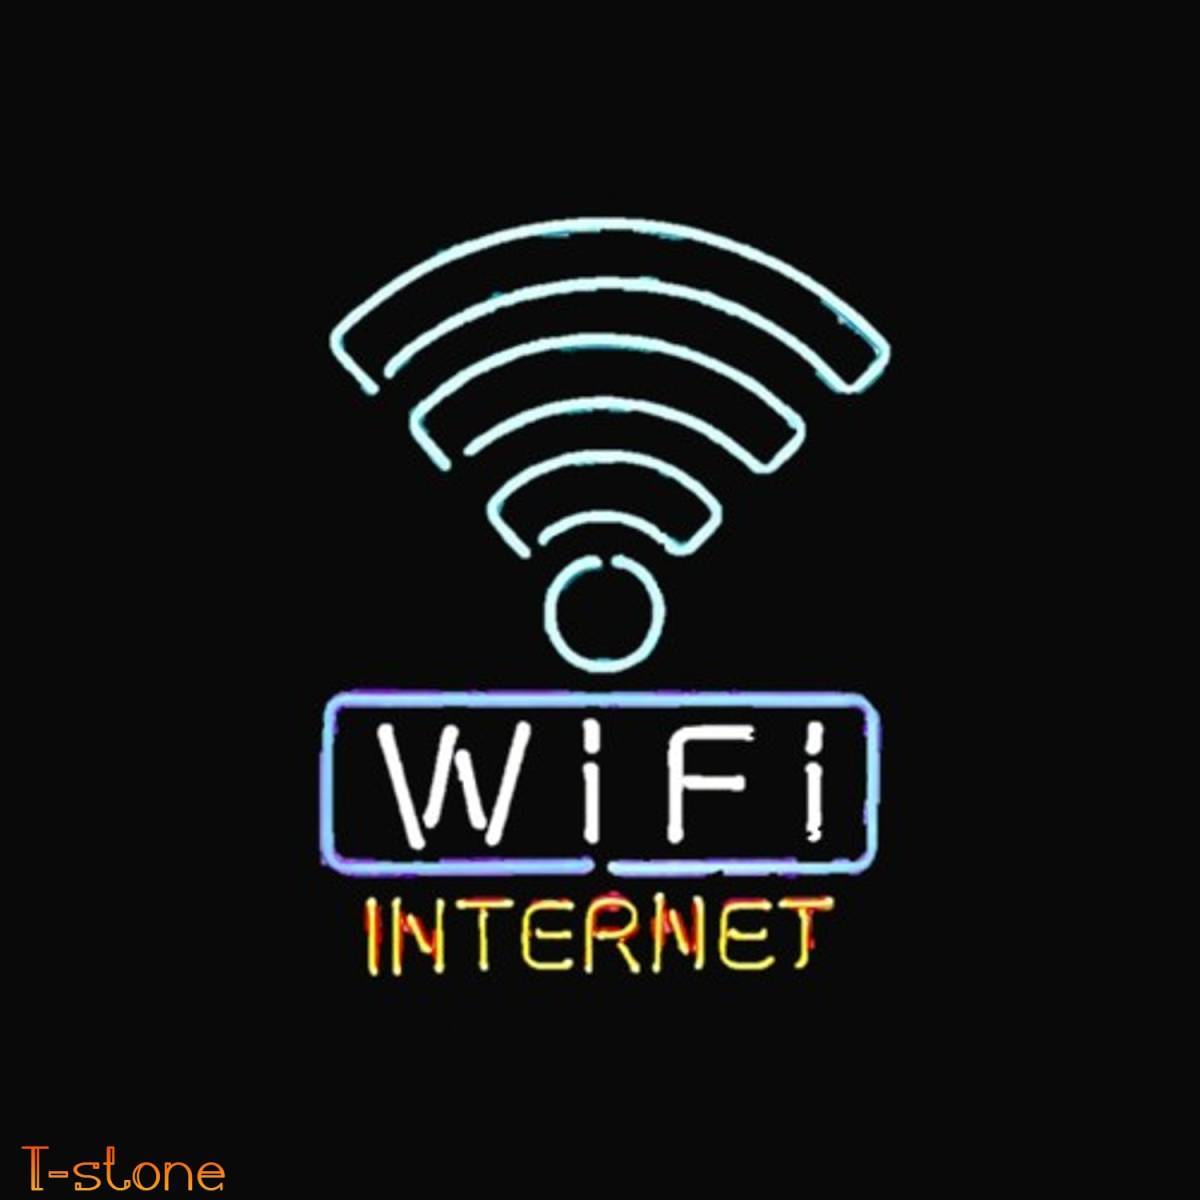 【送料無料】 ネオンサイン Wi-Fi INTERNET ガラスネオン管 存在感抜群 アメリカンスタイル ルームデコ イルミネーシ